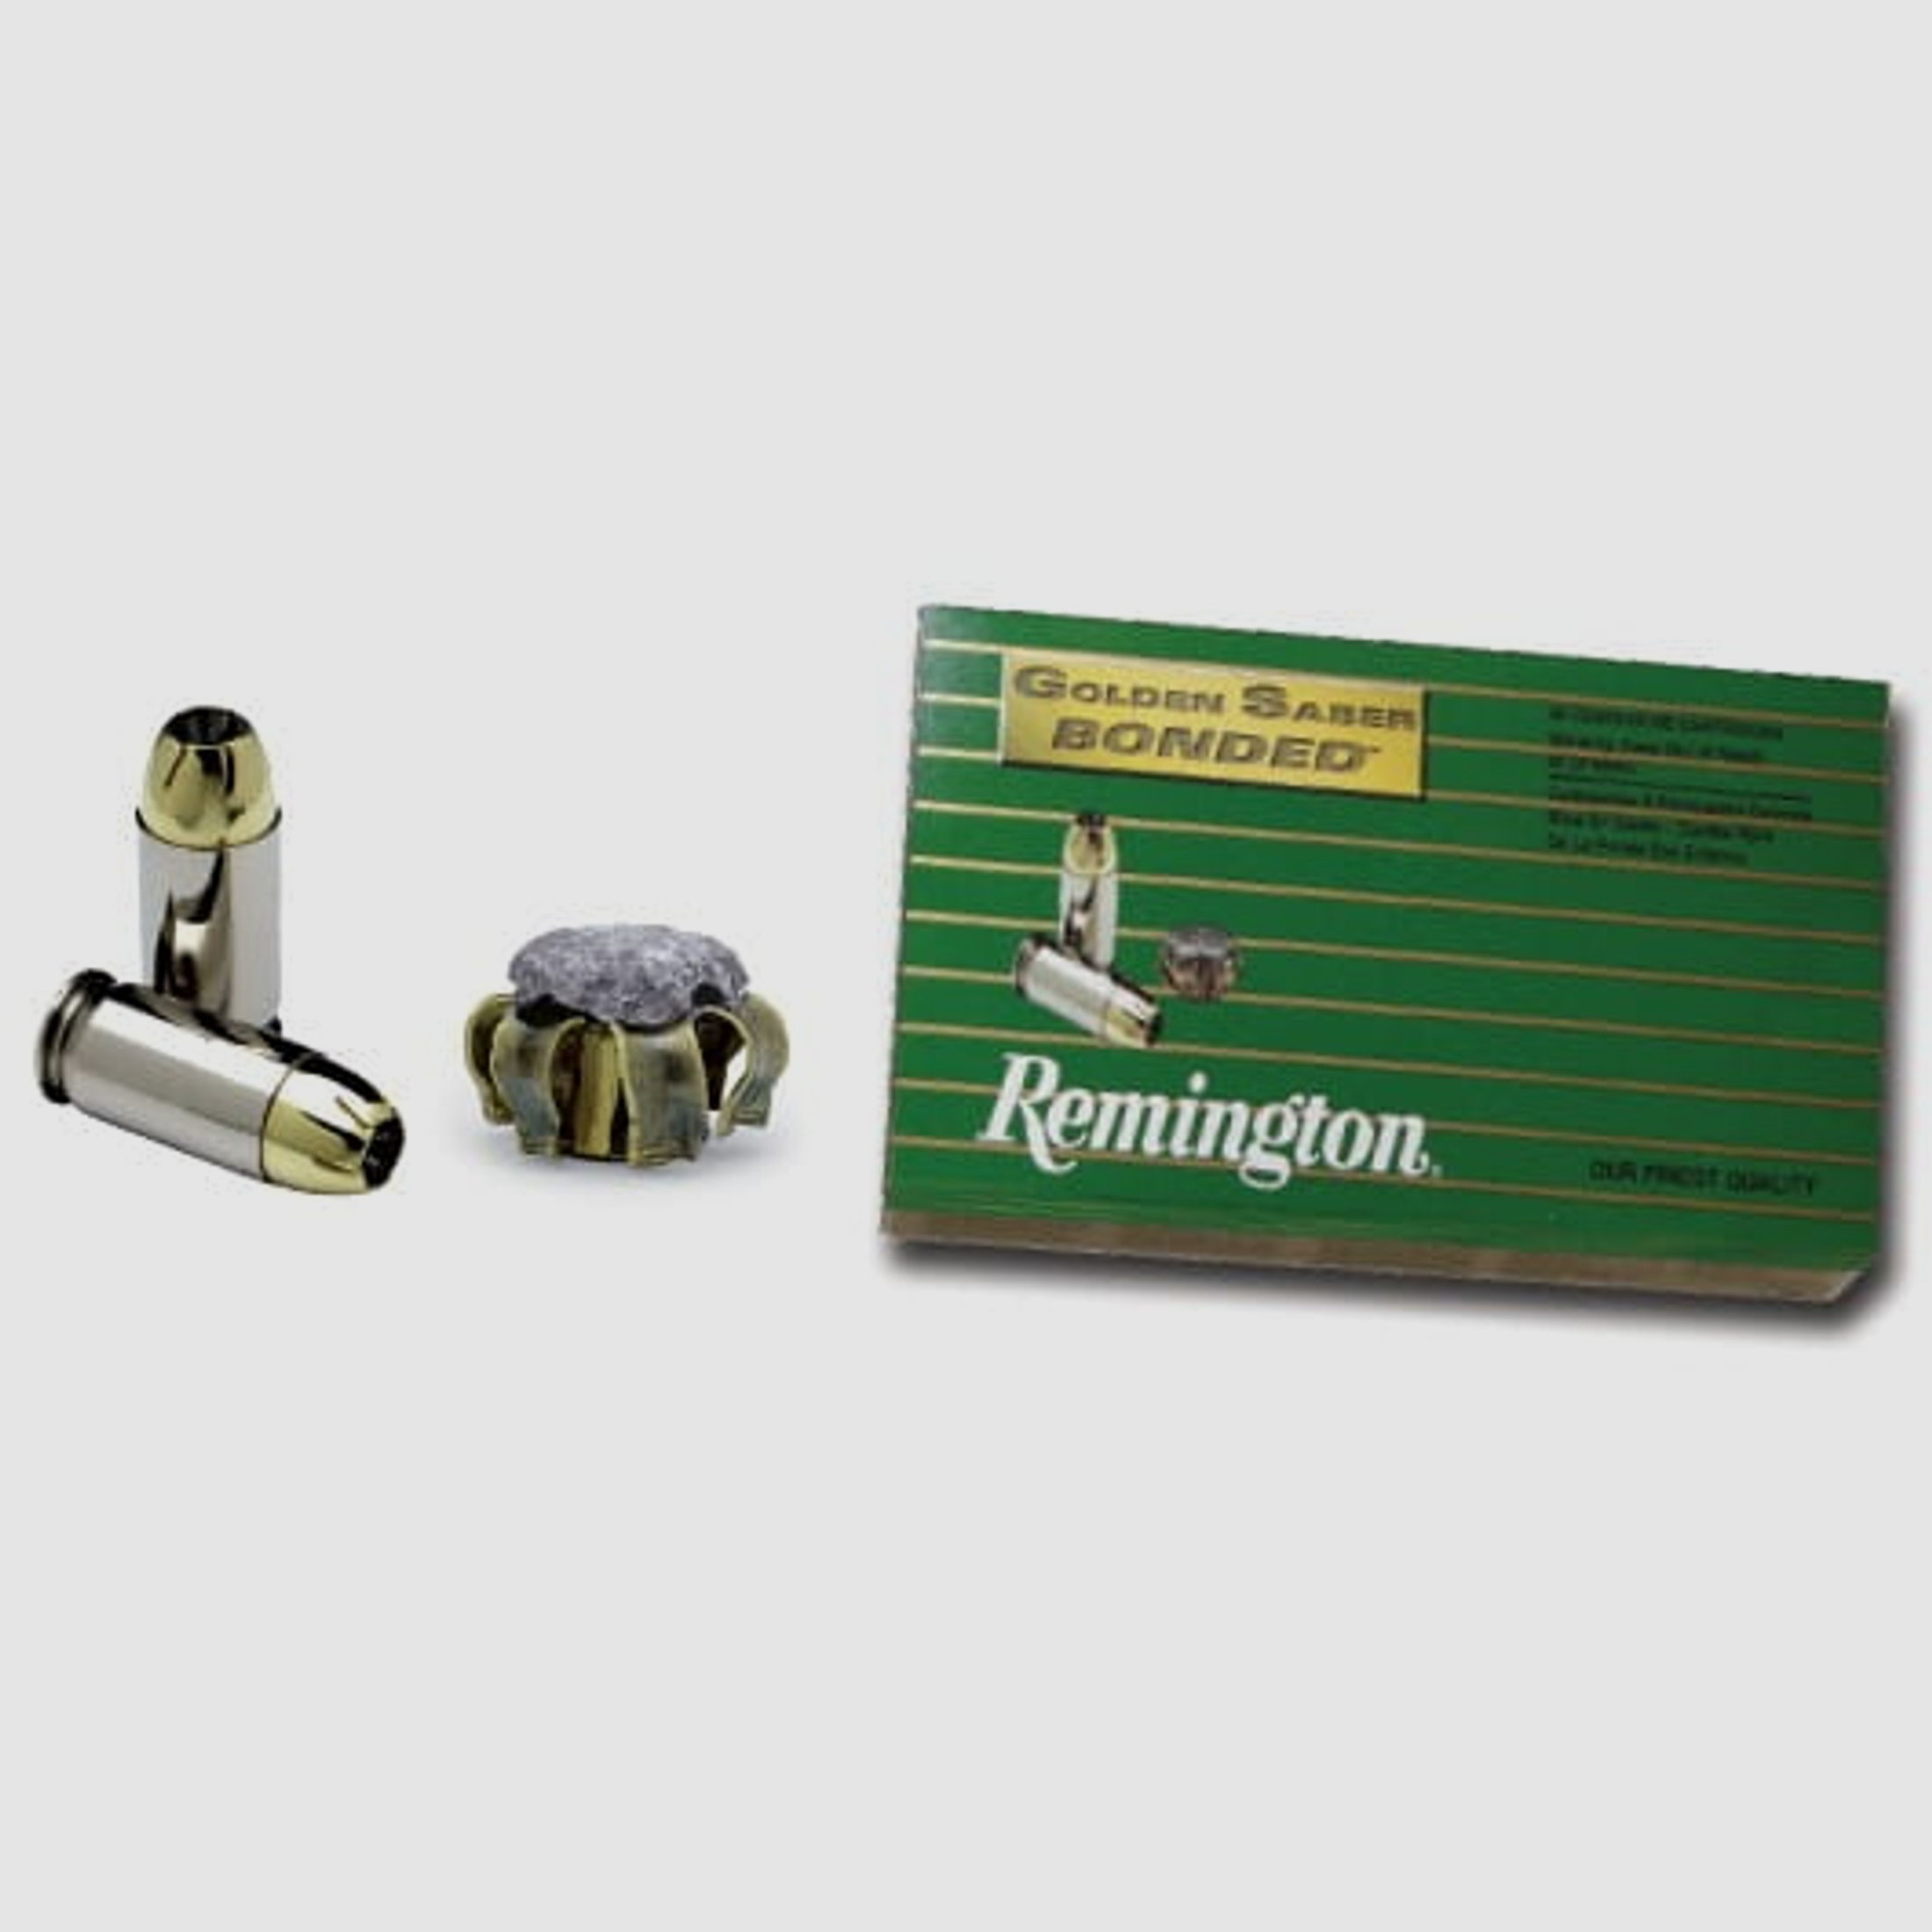 Remington Golden Saber Bonded .357 Sig 125 gr. BJHP - 50 St.